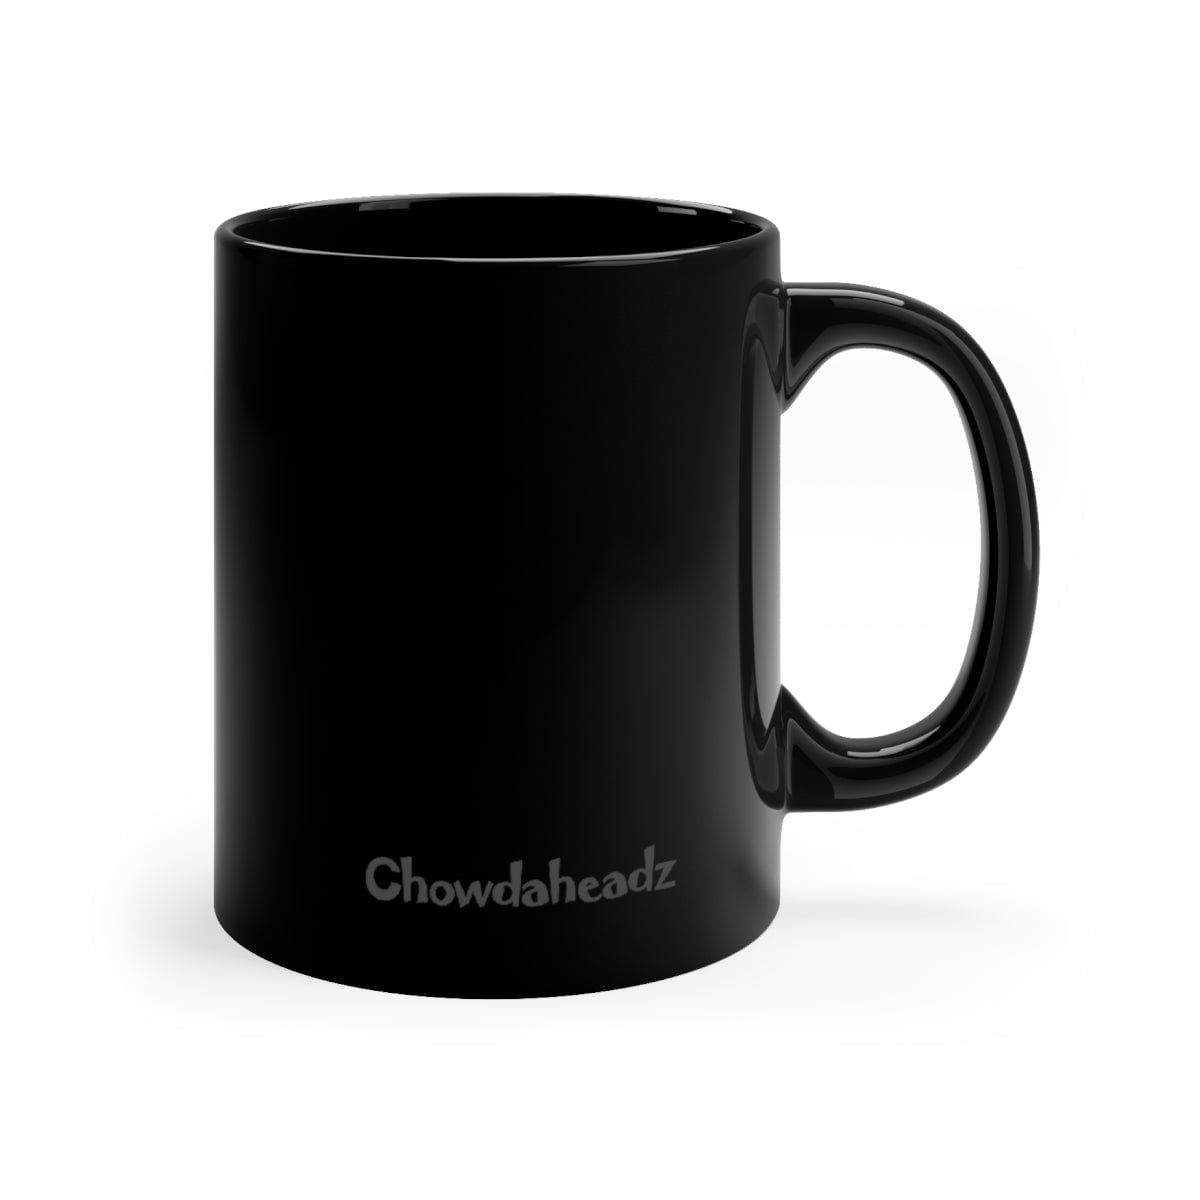 Unbuckled Belt Zone Sign 11oz Coffee Mug - Chowdaheadz